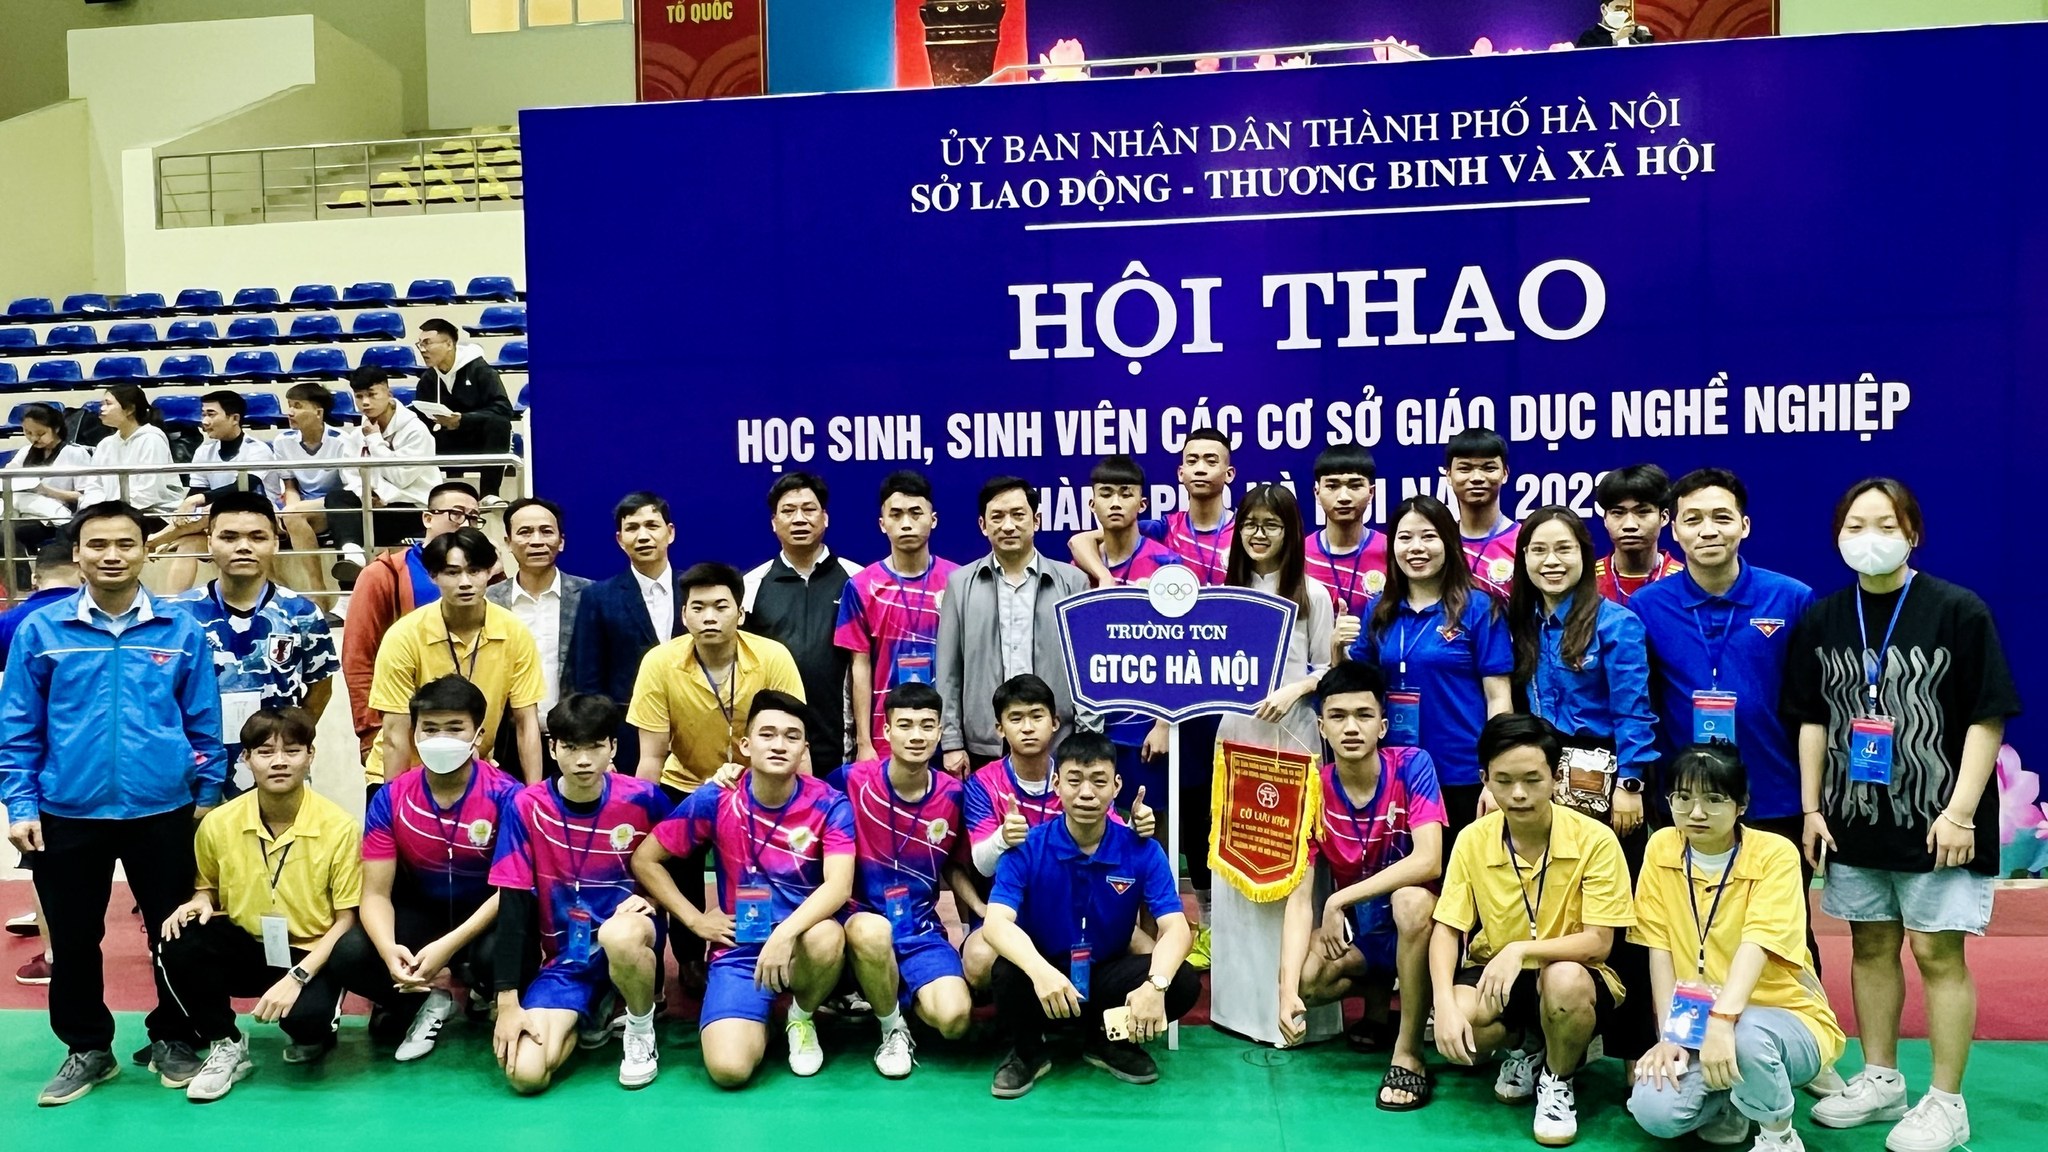 Hội thao học sinh, sinh viên các cơ sở giáo dục nghề nghiệp trên địa bàn thành phố Hà Nội năm 2023